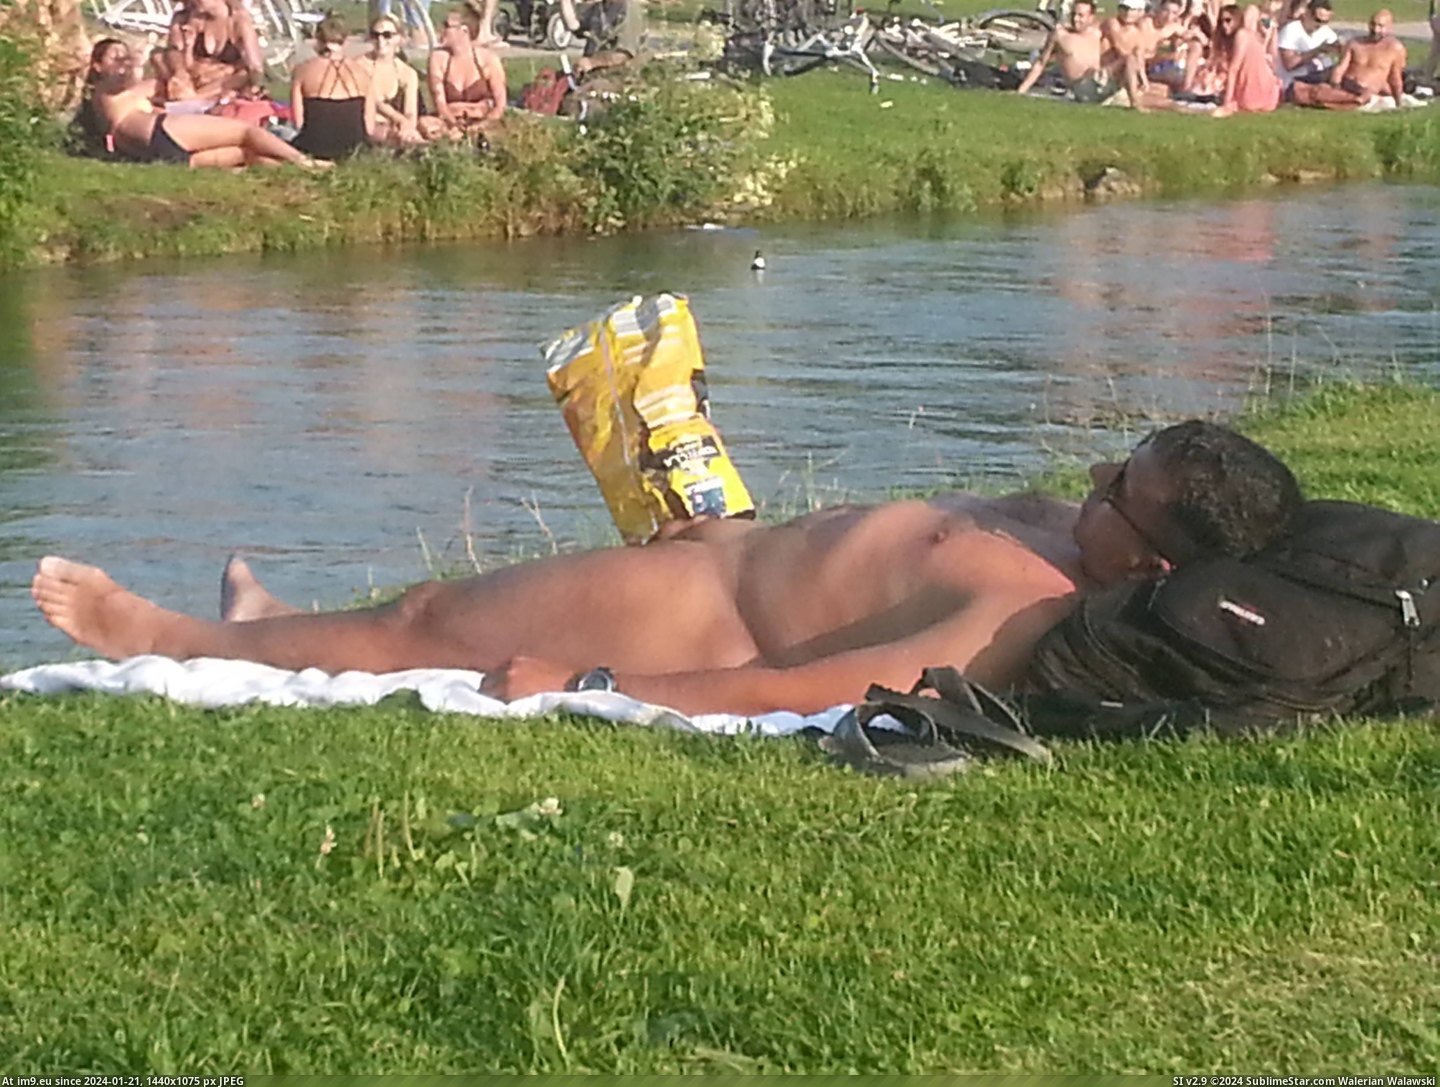 #Wtf #Naked #Man #Crisp #Erection #Sleeping #Bag #Puts [Wtf] Naked sleeping man gets erection so someone puts crisp bag over it. Pic. (Image of album My r/WTF favs))